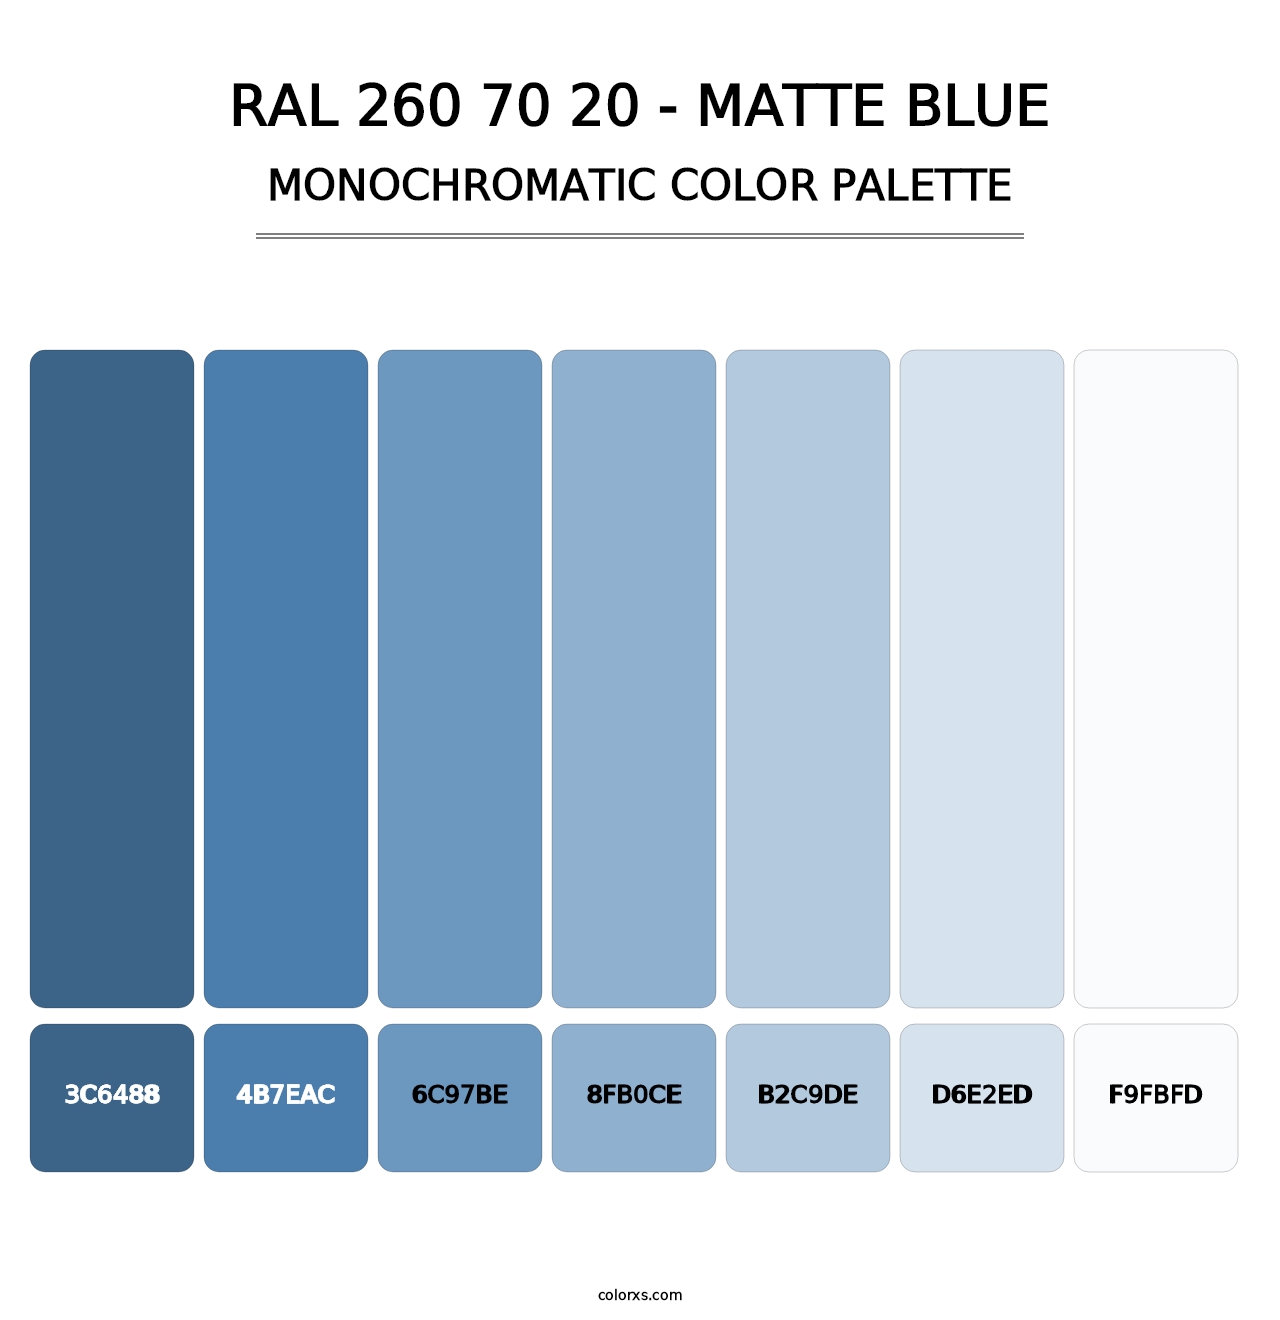 RAL 260 70 20 - Matte Blue - Monochromatic Color Palette